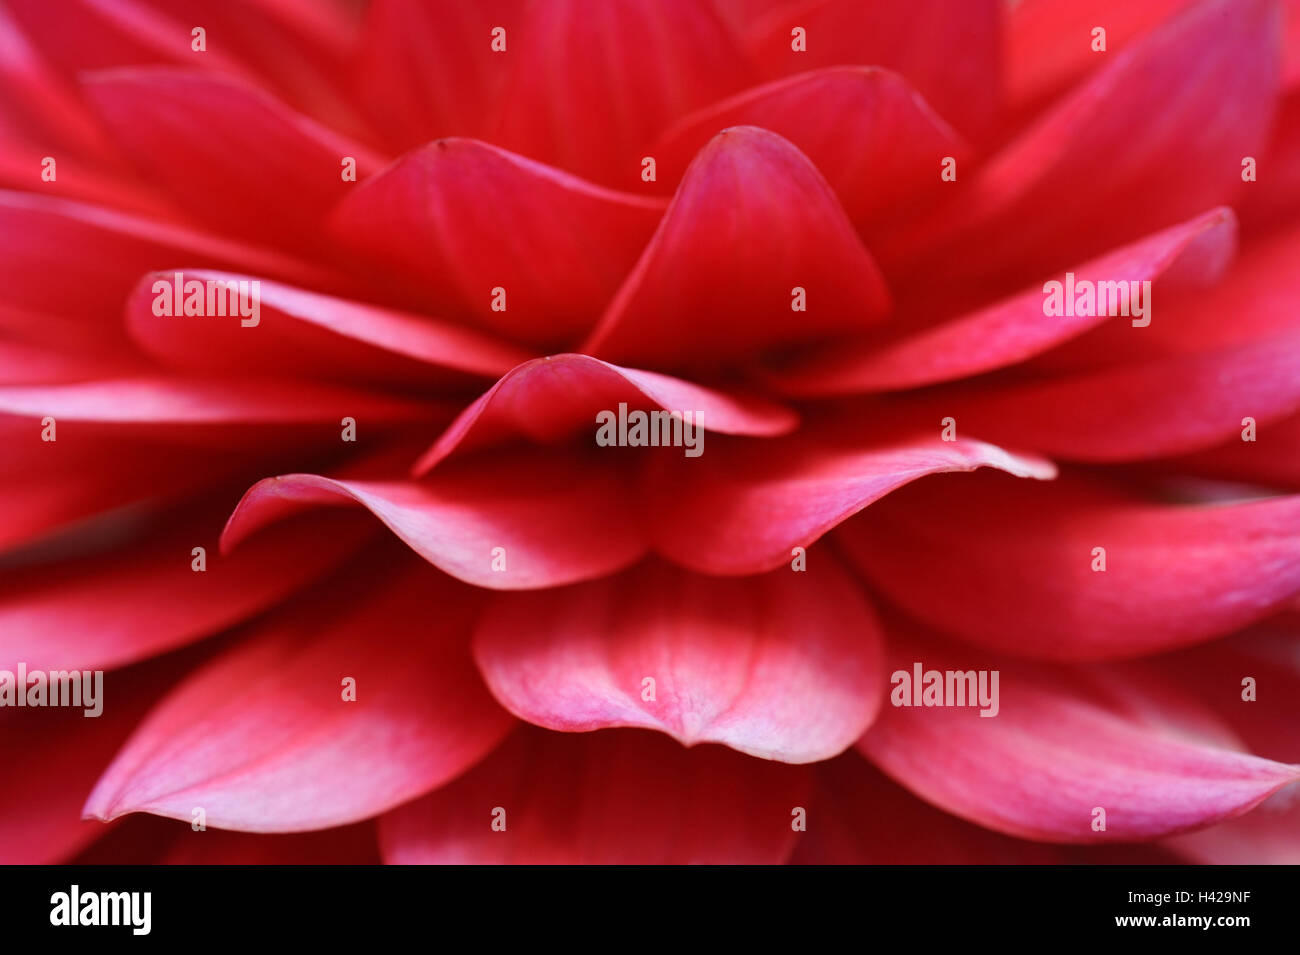 Dahlia, blossom, red, close up, Stock Photo